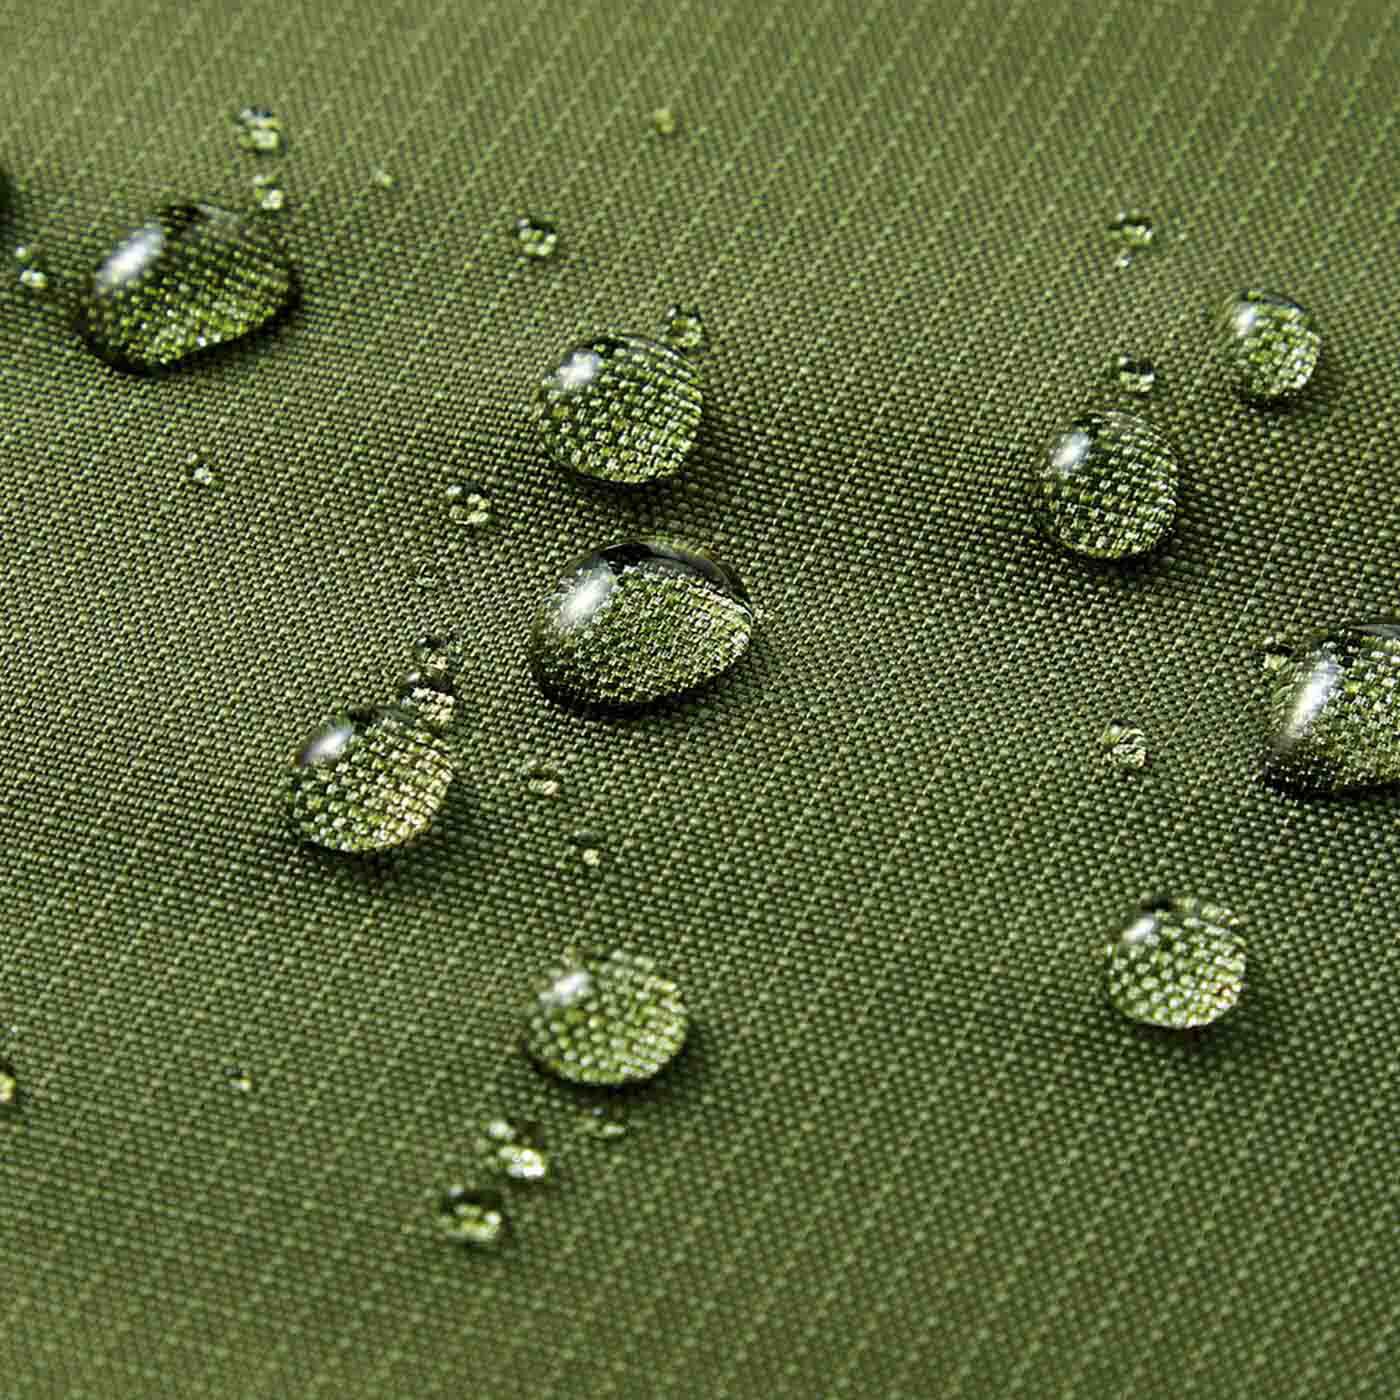 フェリシモの雑貨 Kraso|レジカゴにフィット ファスナーで目隠しできる ジャンボなマイバッグ〈モチーフ・撥水（はっすい）〉の会|撥水加工素材なので、水滴がサッとはらえます。